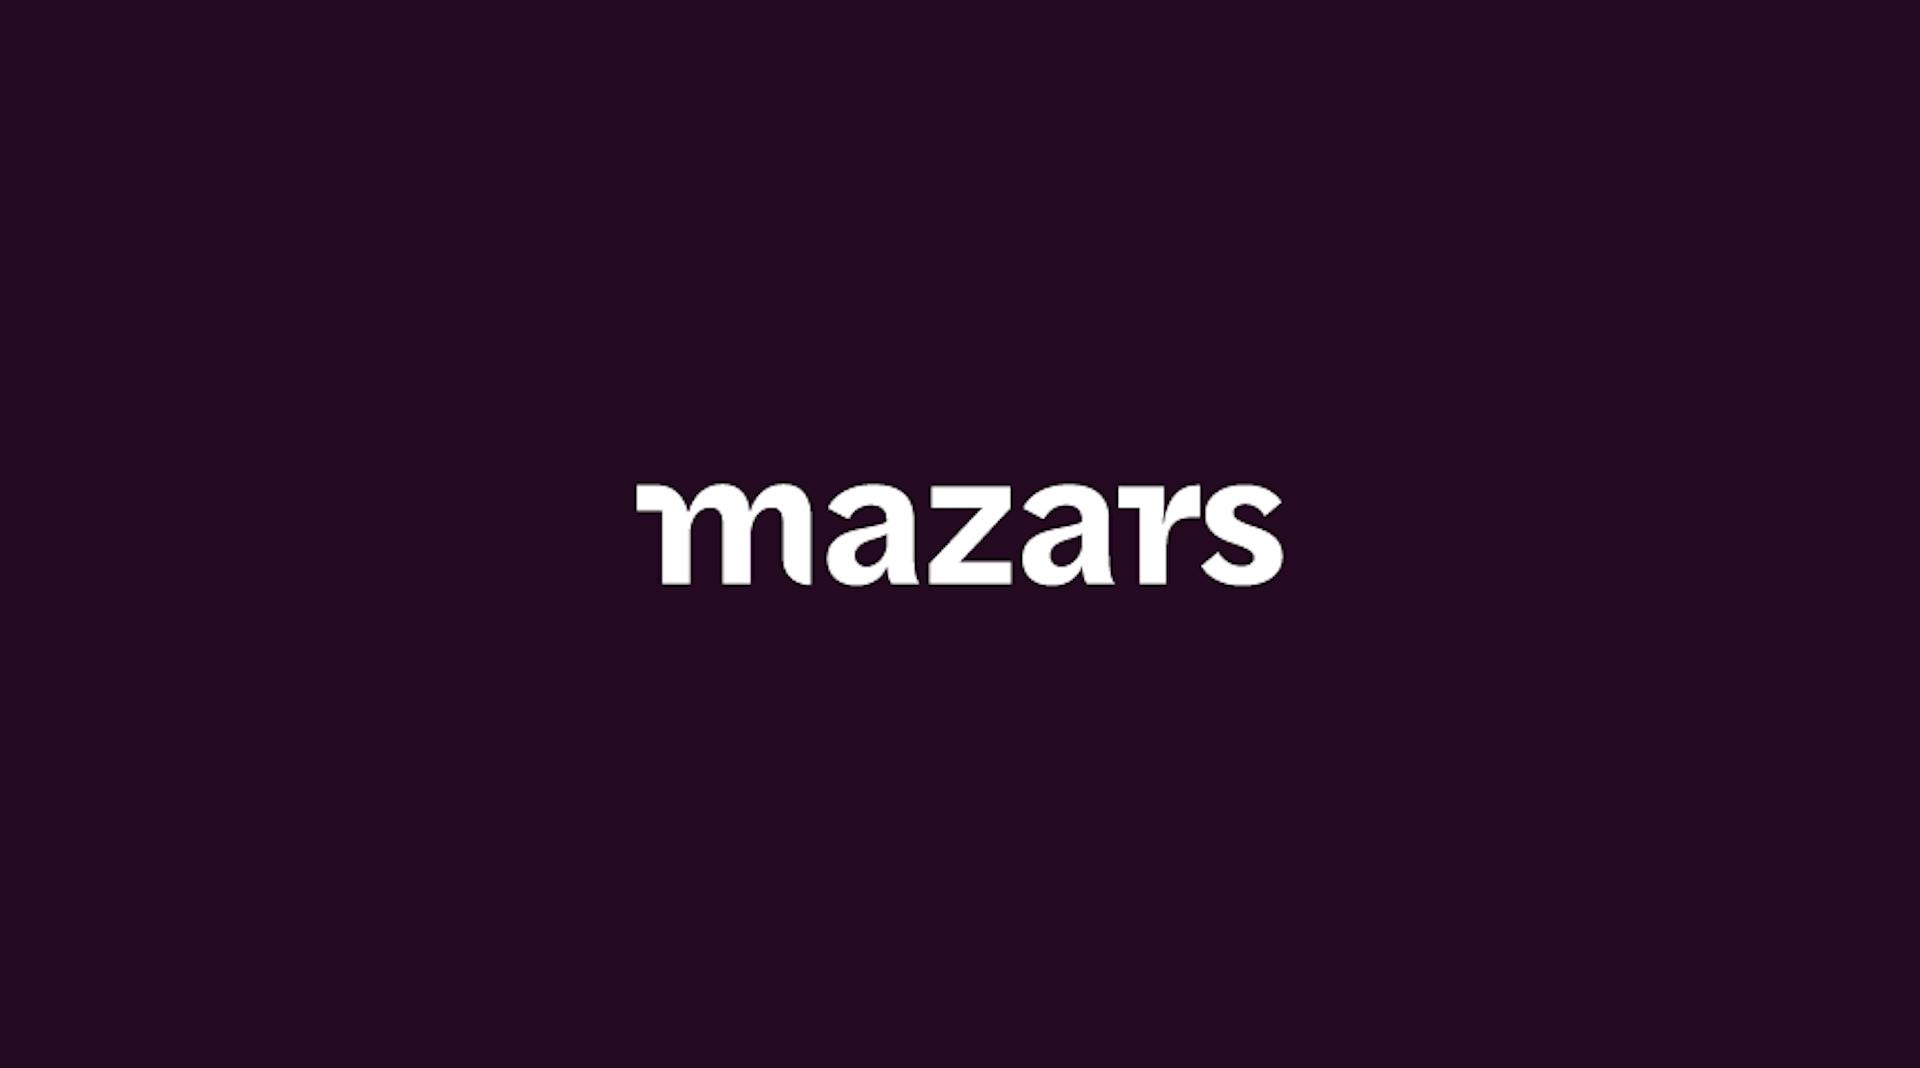 Mazars white logo on a dark purple background